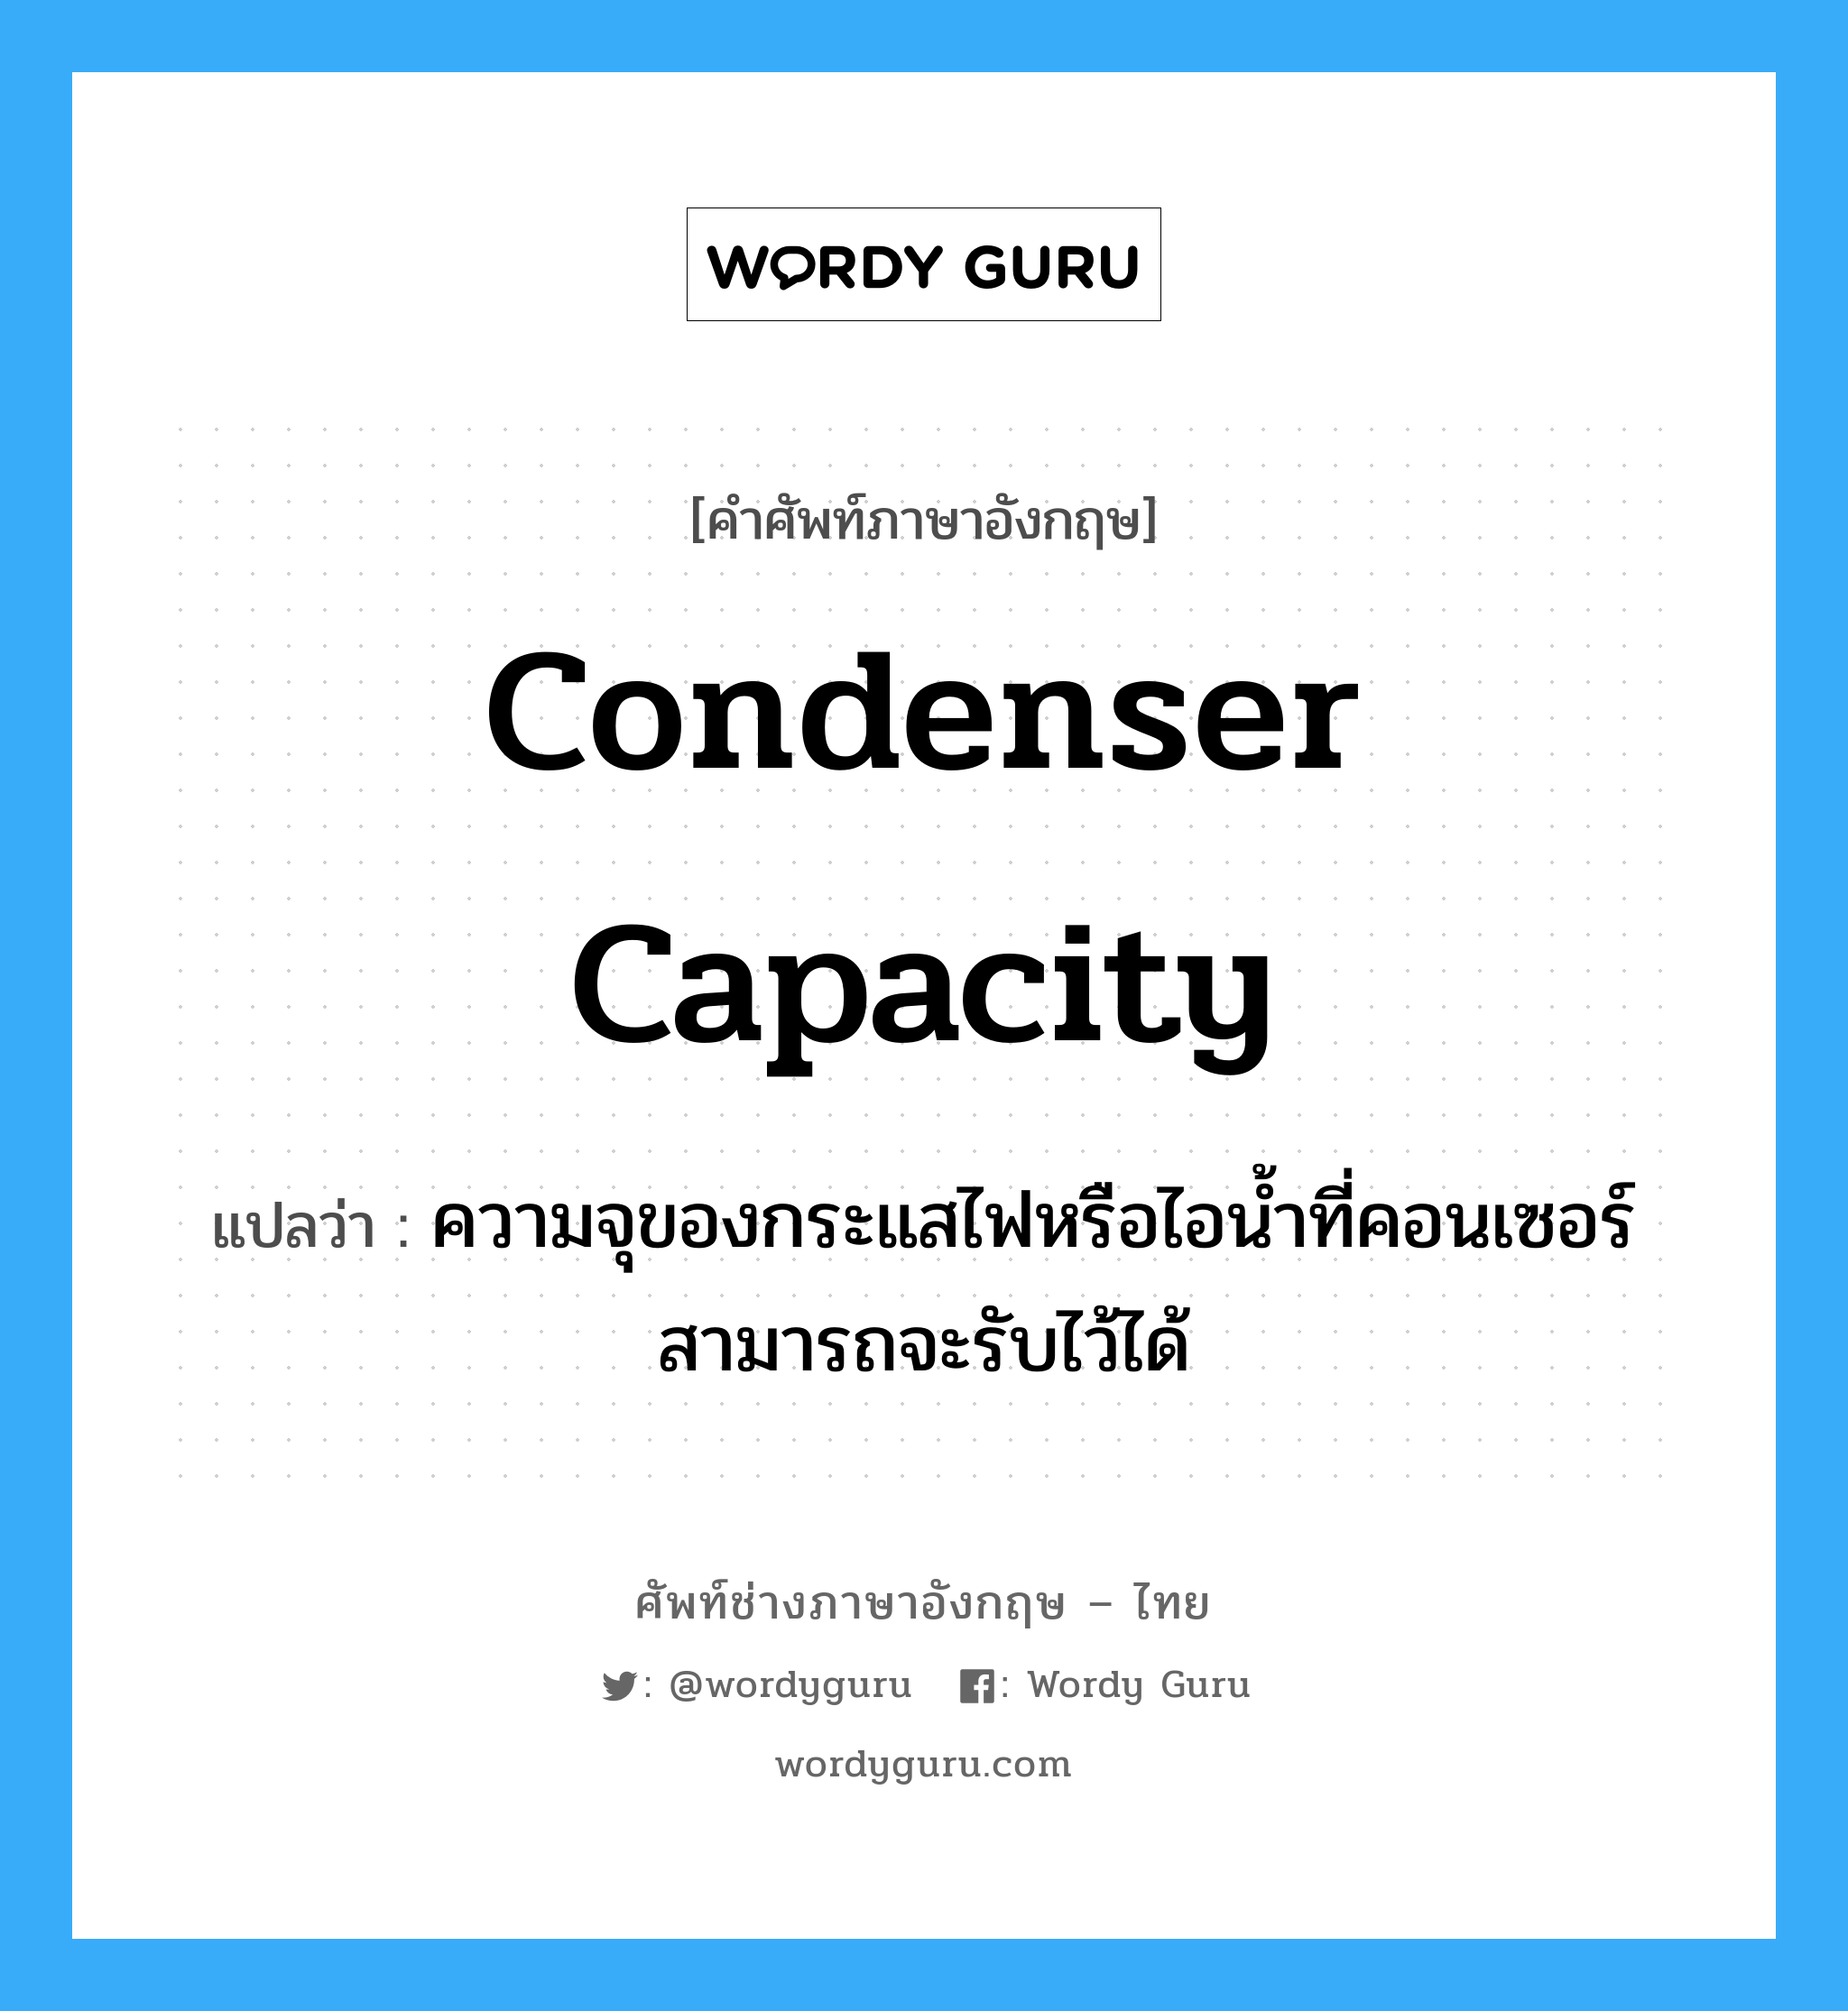 condenser capacity แปลว่า?, คำศัพท์ช่างภาษาอังกฤษ - ไทย condenser capacity คำศัพท์ภาษาอังกฤษ condenser capacity แปลว่า ความจุของกระแสไฟหรือไอน้ำที่คอนเซอร์สามารถจะรับไว้ได้